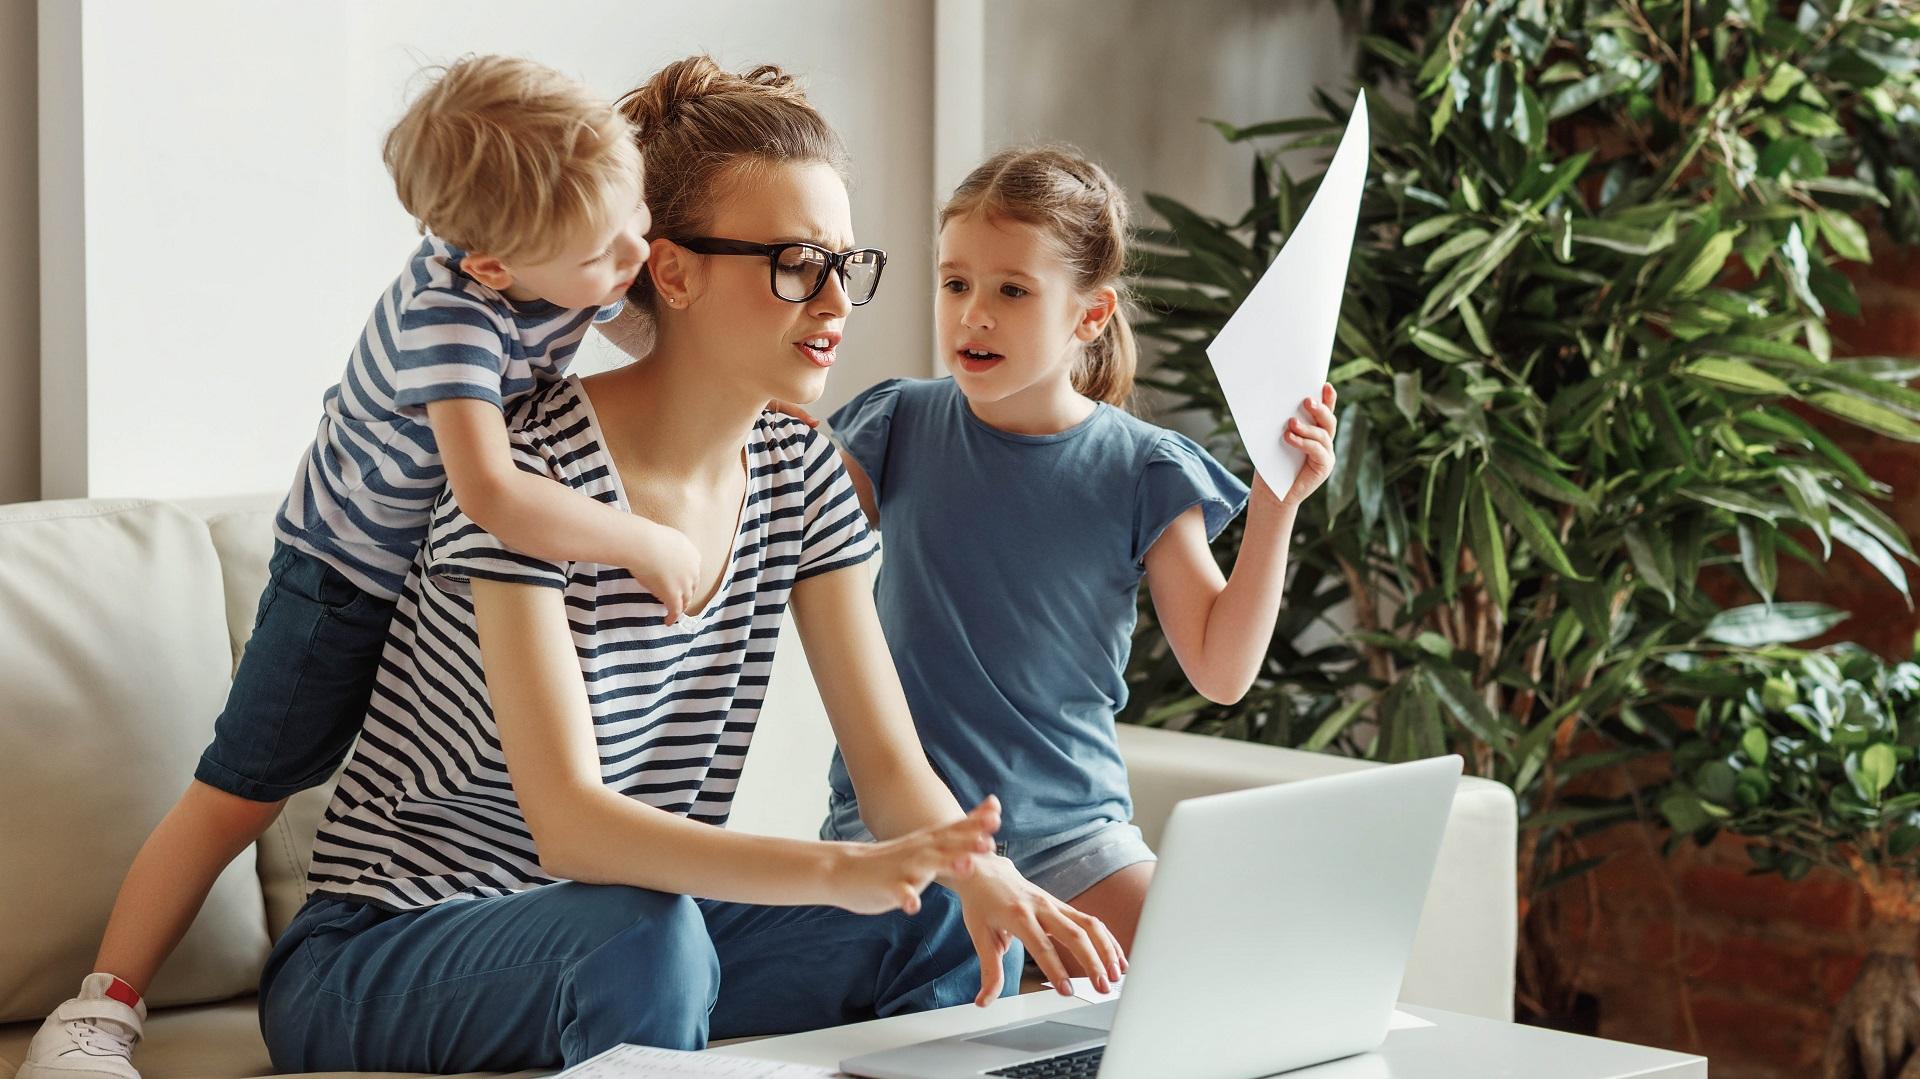 Kuinka pitkiksi sinun työpäiväsi venyvät? Jääkö aikaa tarpeeksi perheelle? (Kuva: Shutterstock)